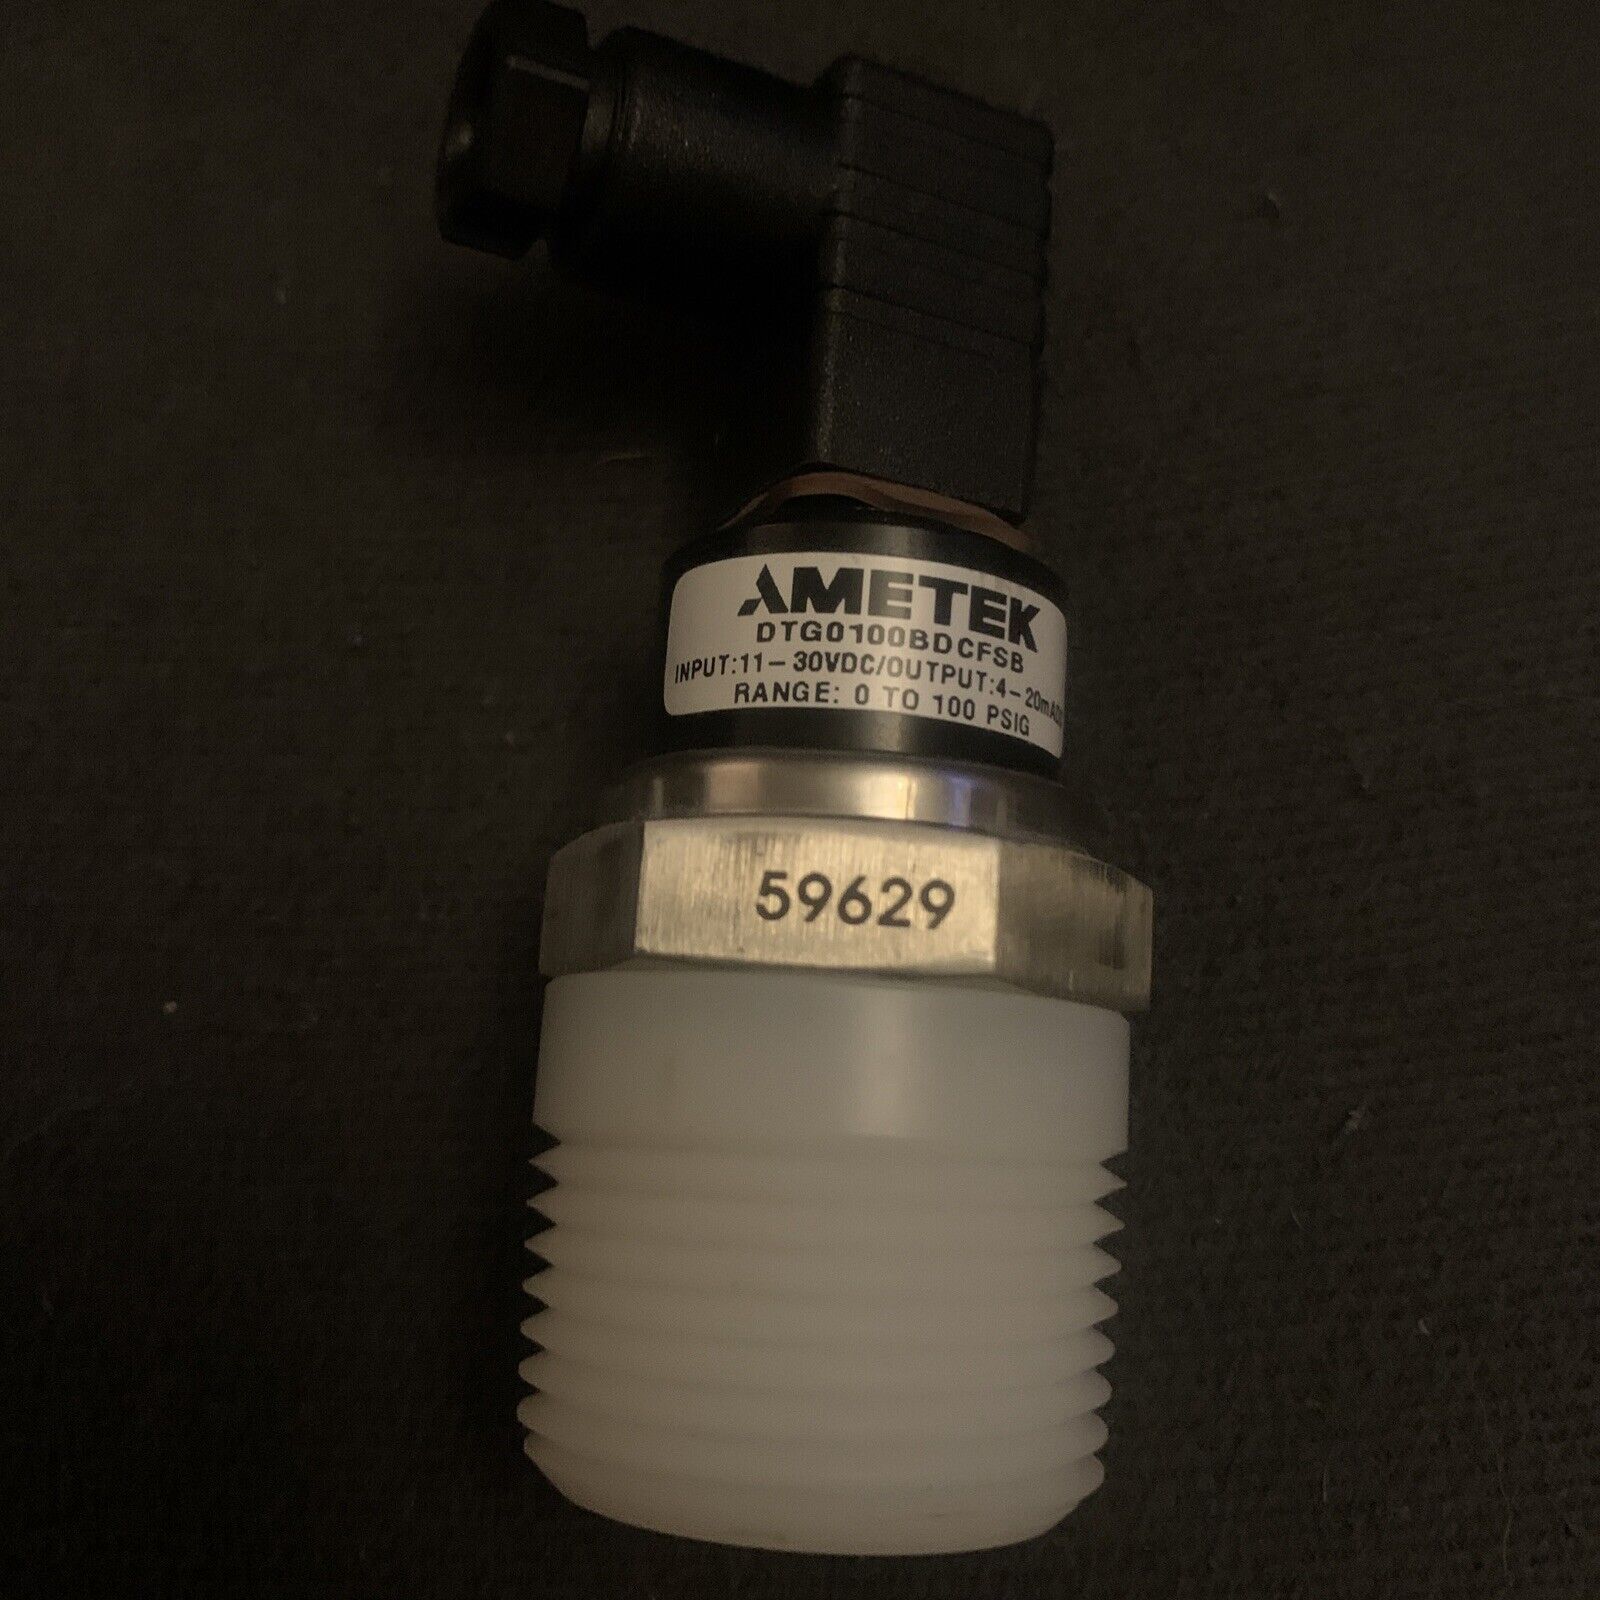 Ametek DTG Transducer 1”NPT 0-100PSIG  4-20mADC / 11-30 VDC